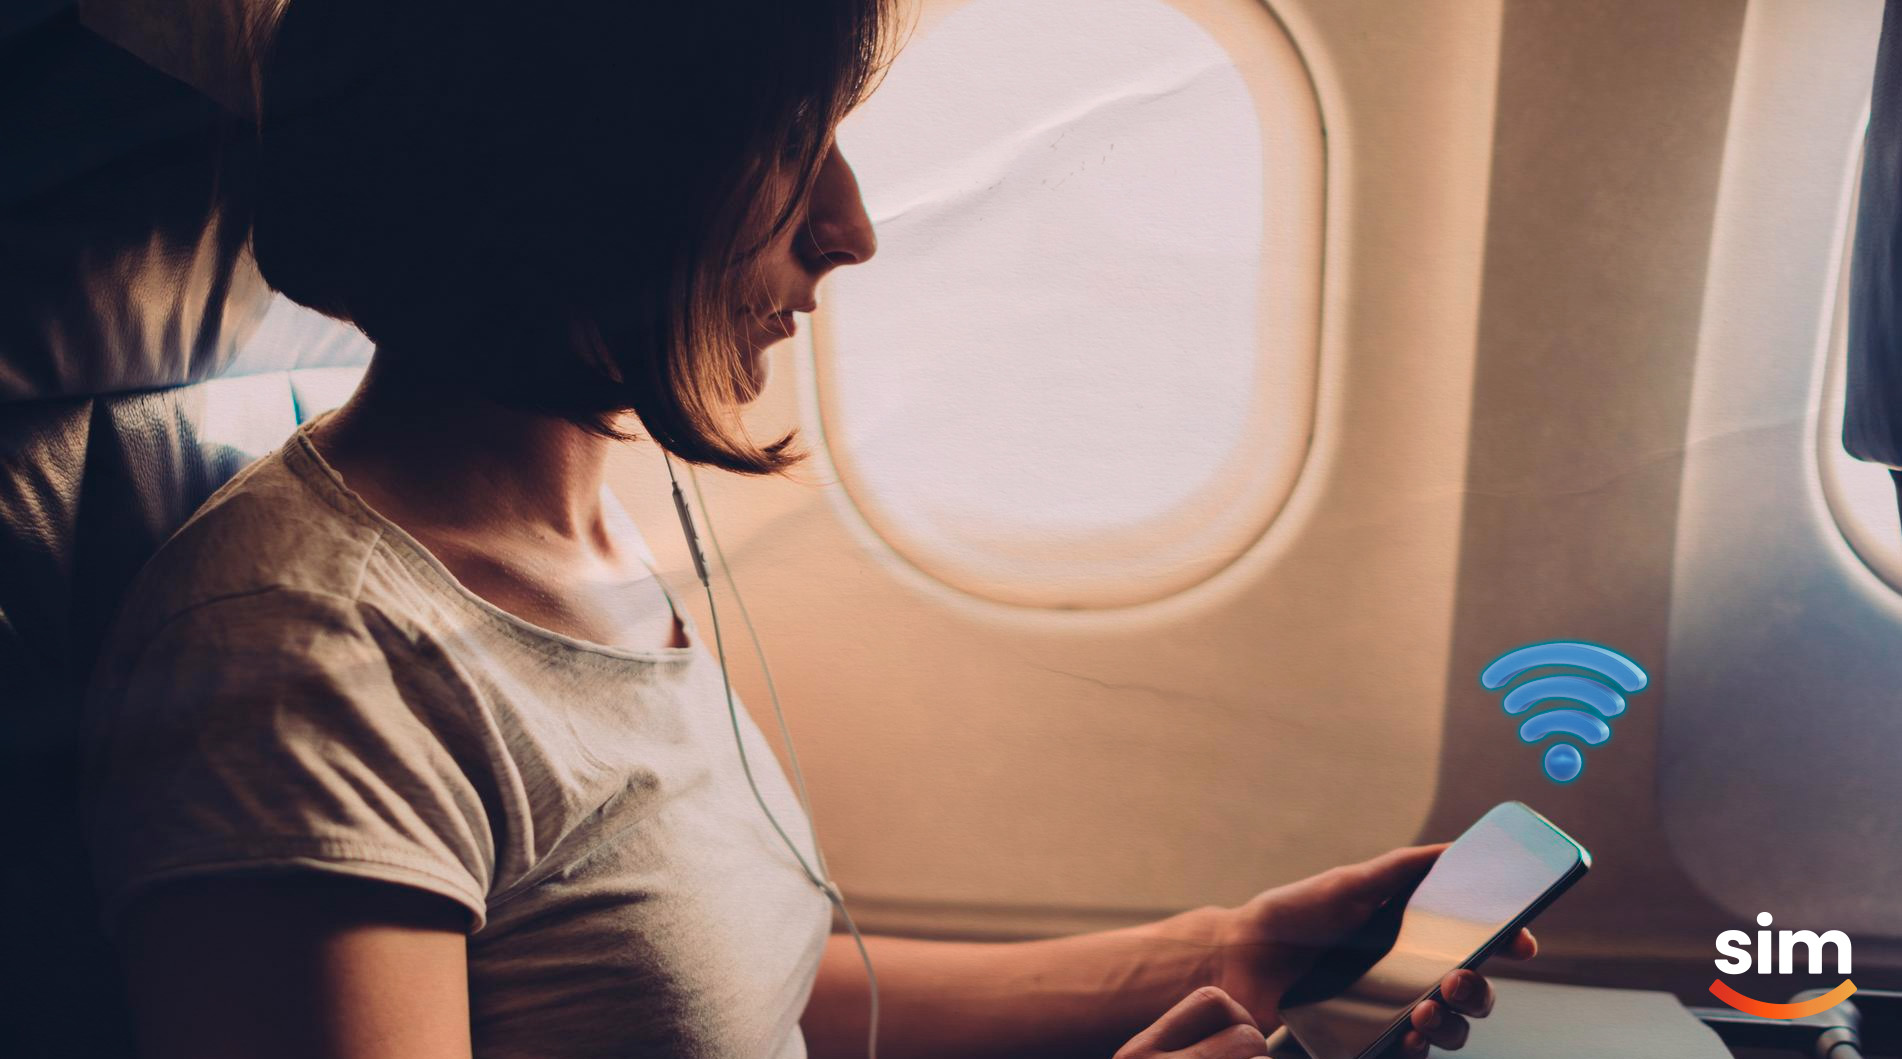 Por que é preciso ativar modo avião do celular durante um voo